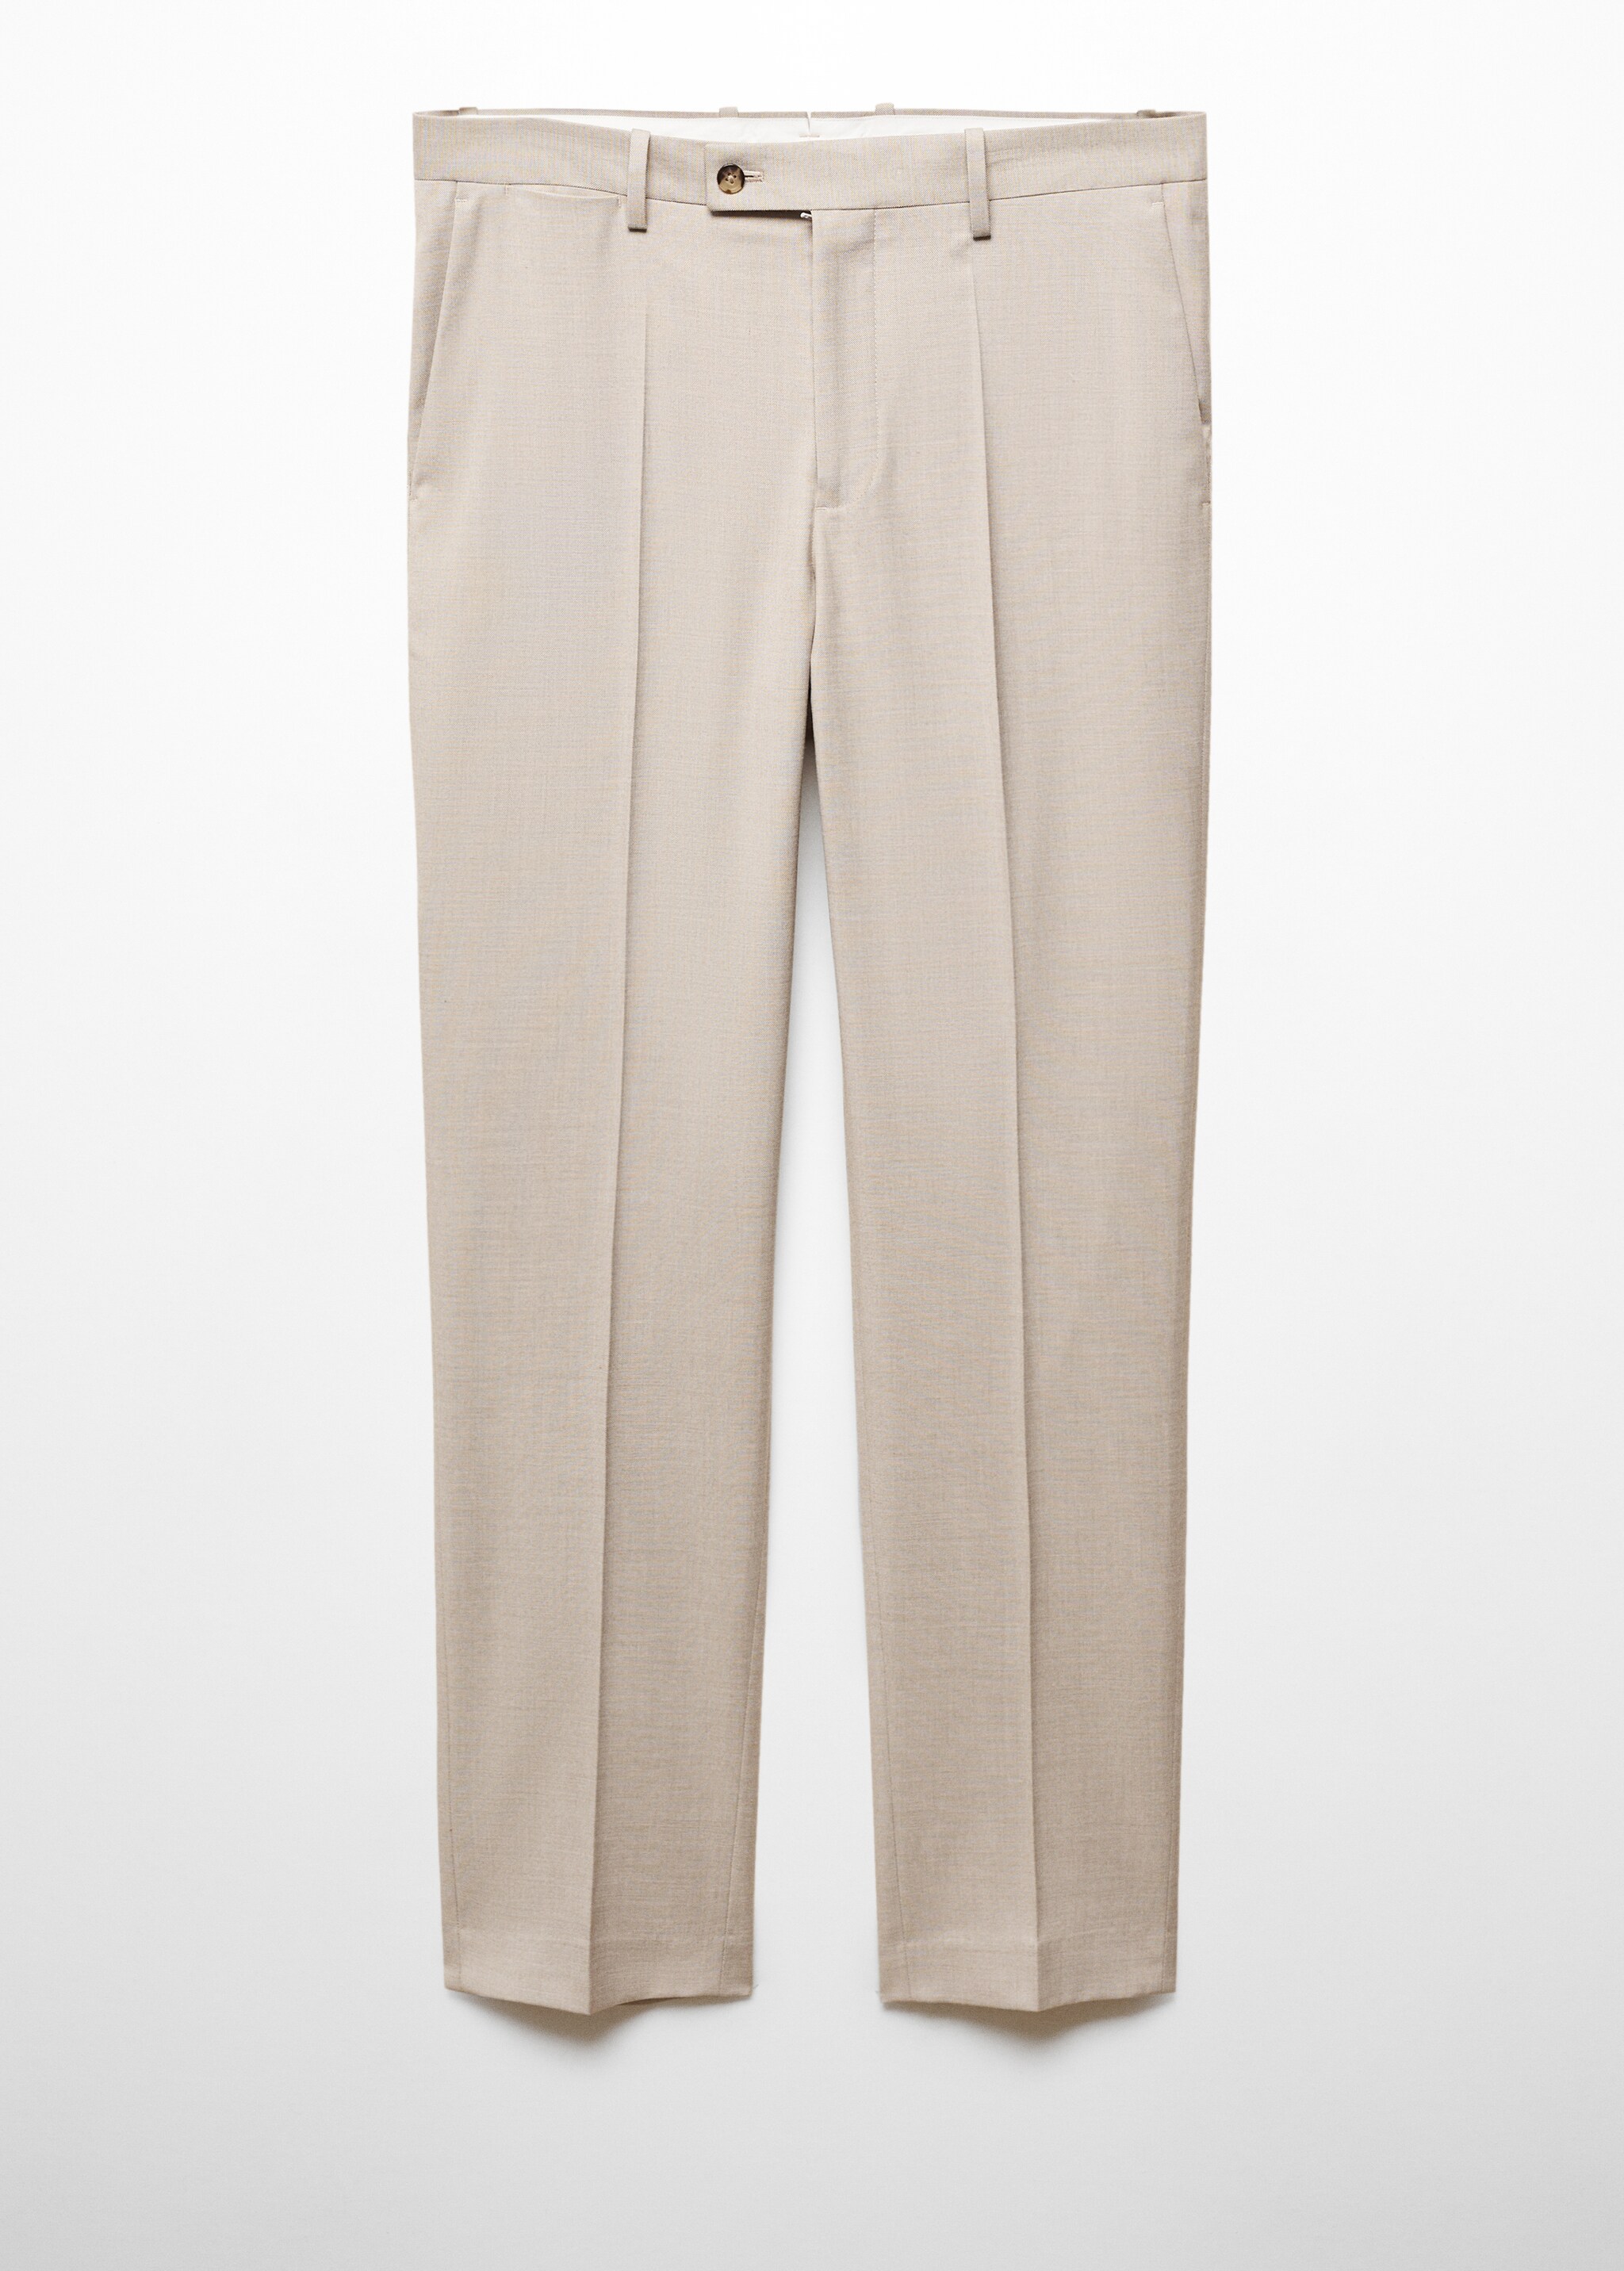 Костюмные брюки slim fit из ткани стретч - Изделие без модели